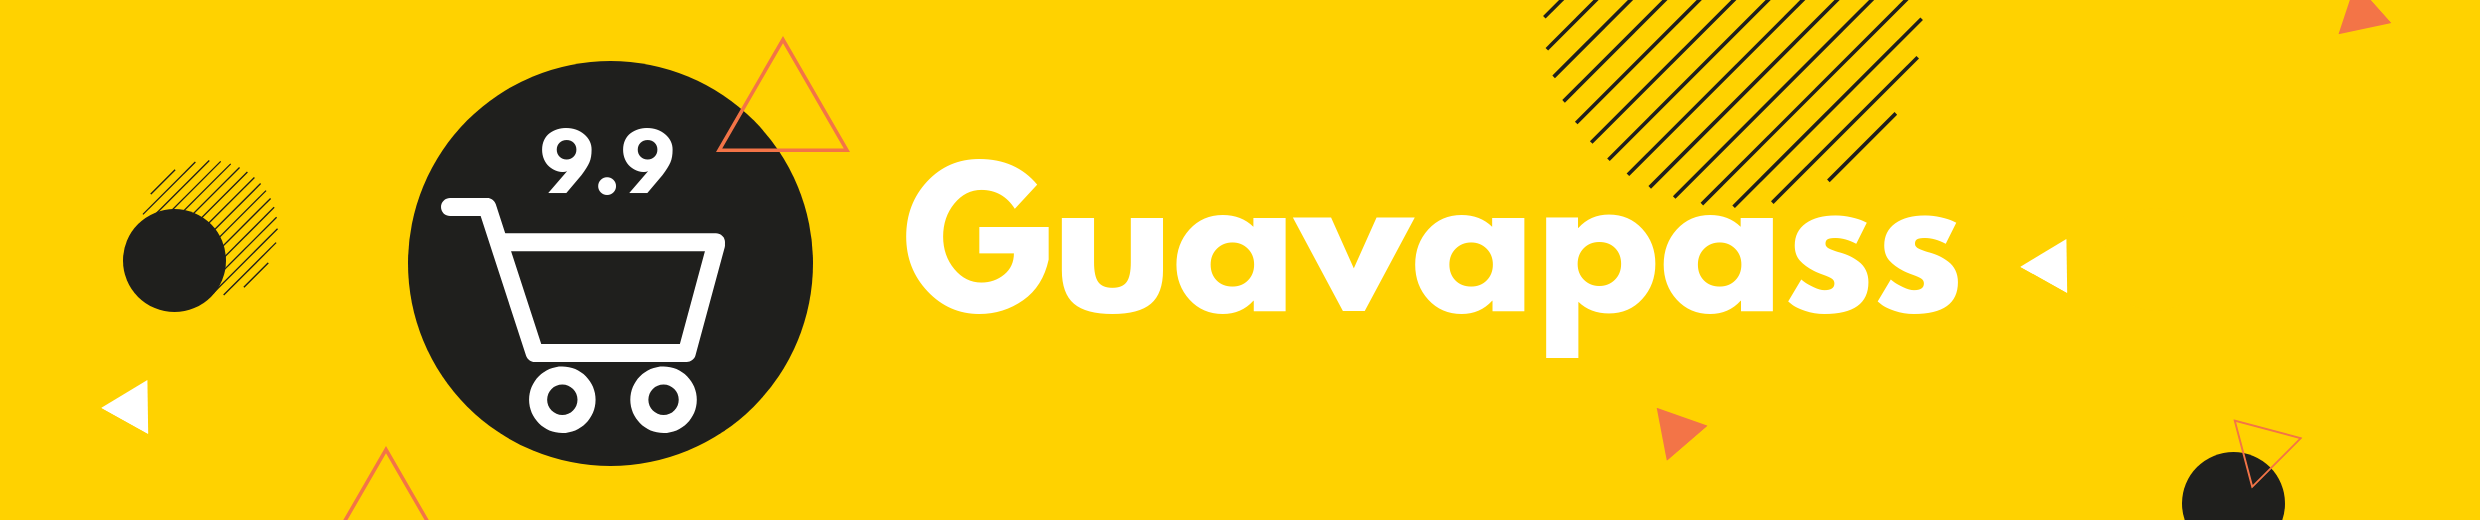 guavapass coupon code